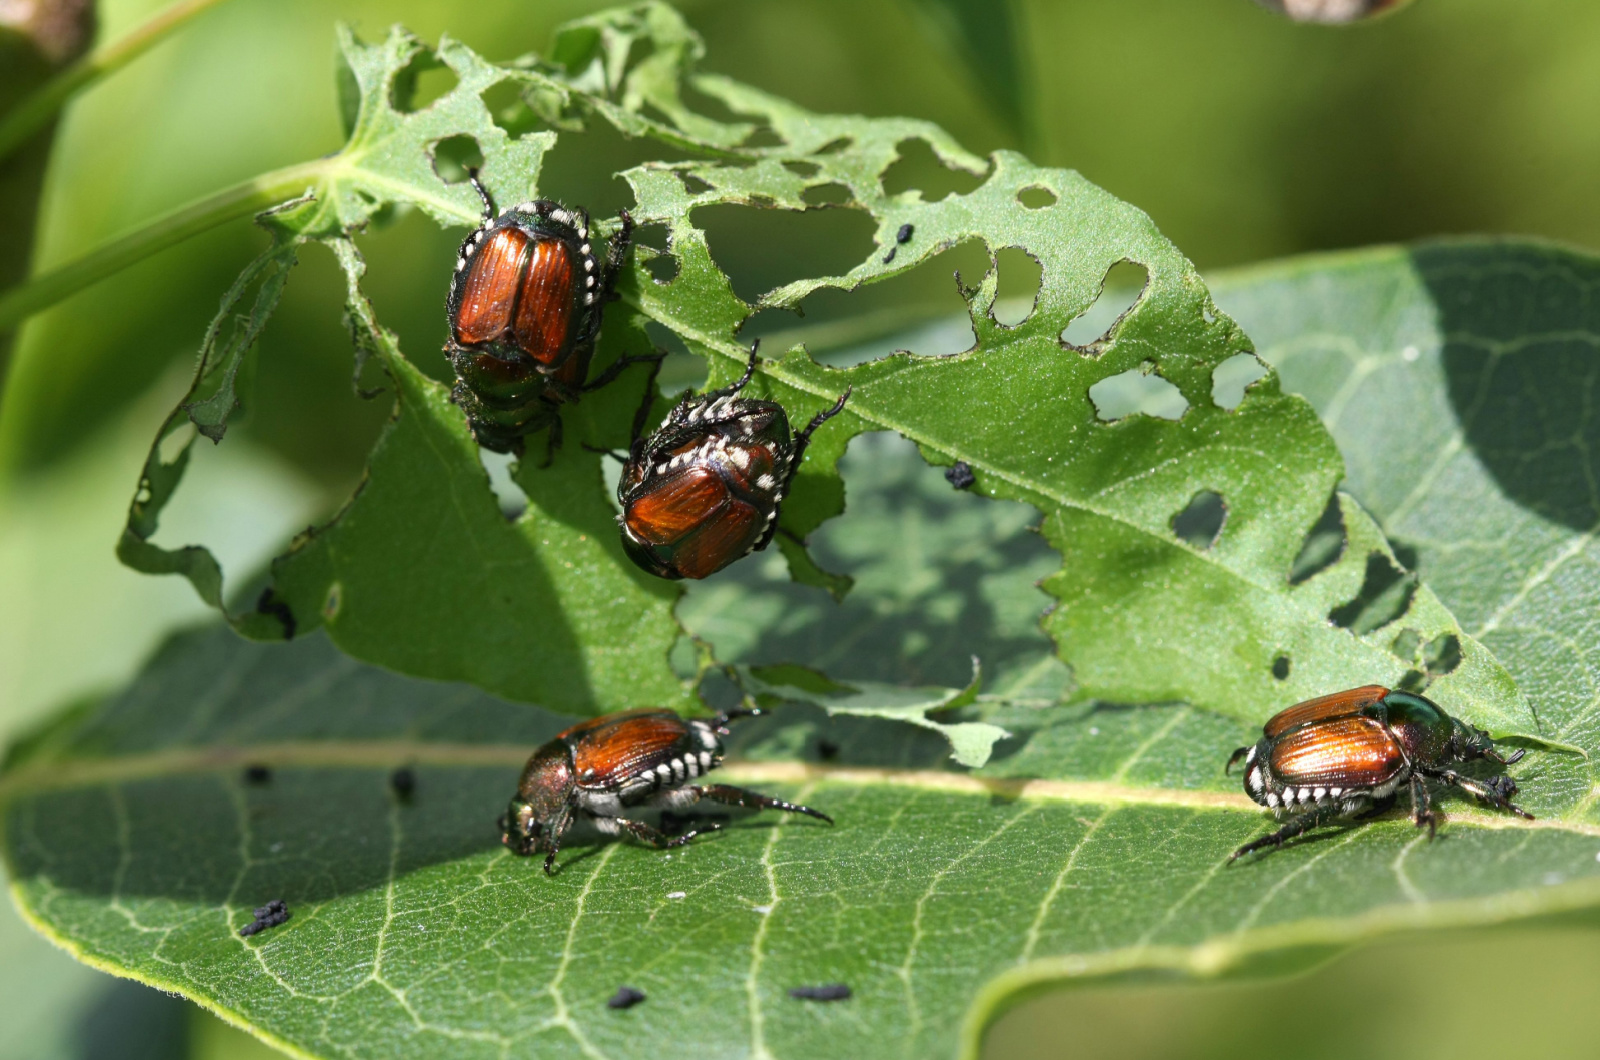 Japanese Beetle Pests on a leaf